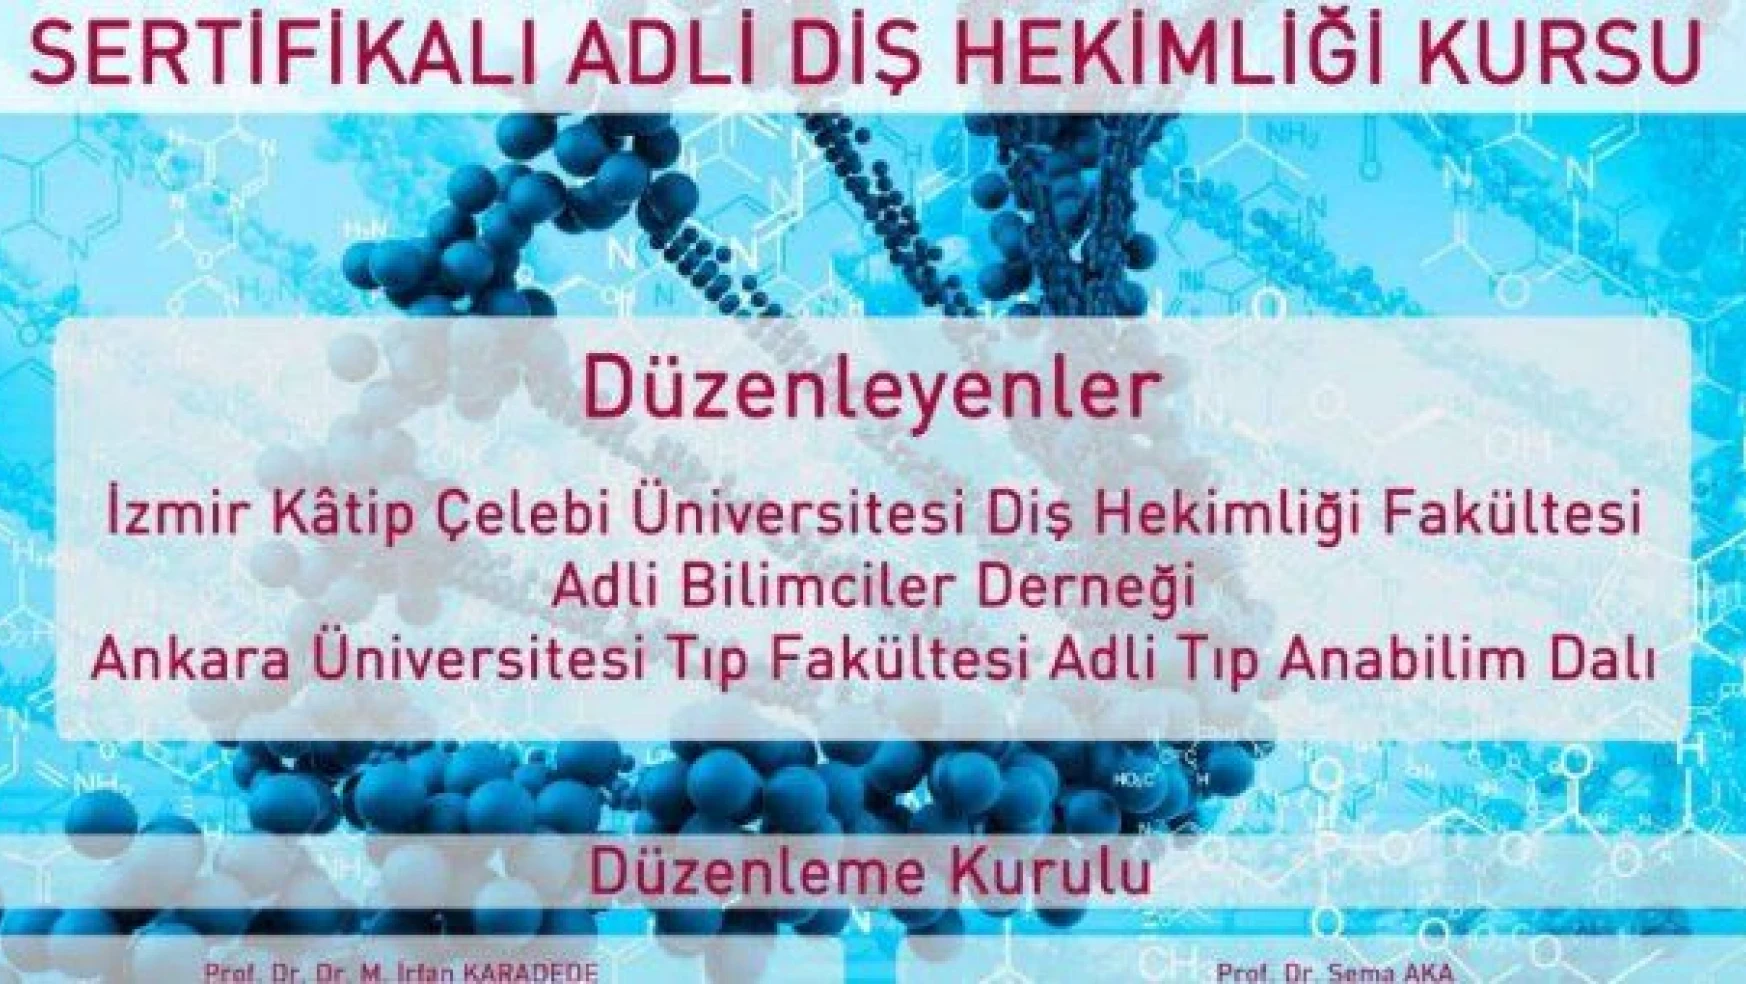 İzmir Katip Çelebi Üniversitesi Diş Hekimliği Çalışma Günleri III Sertifikalı Adli Diş Hekimliği Kursu